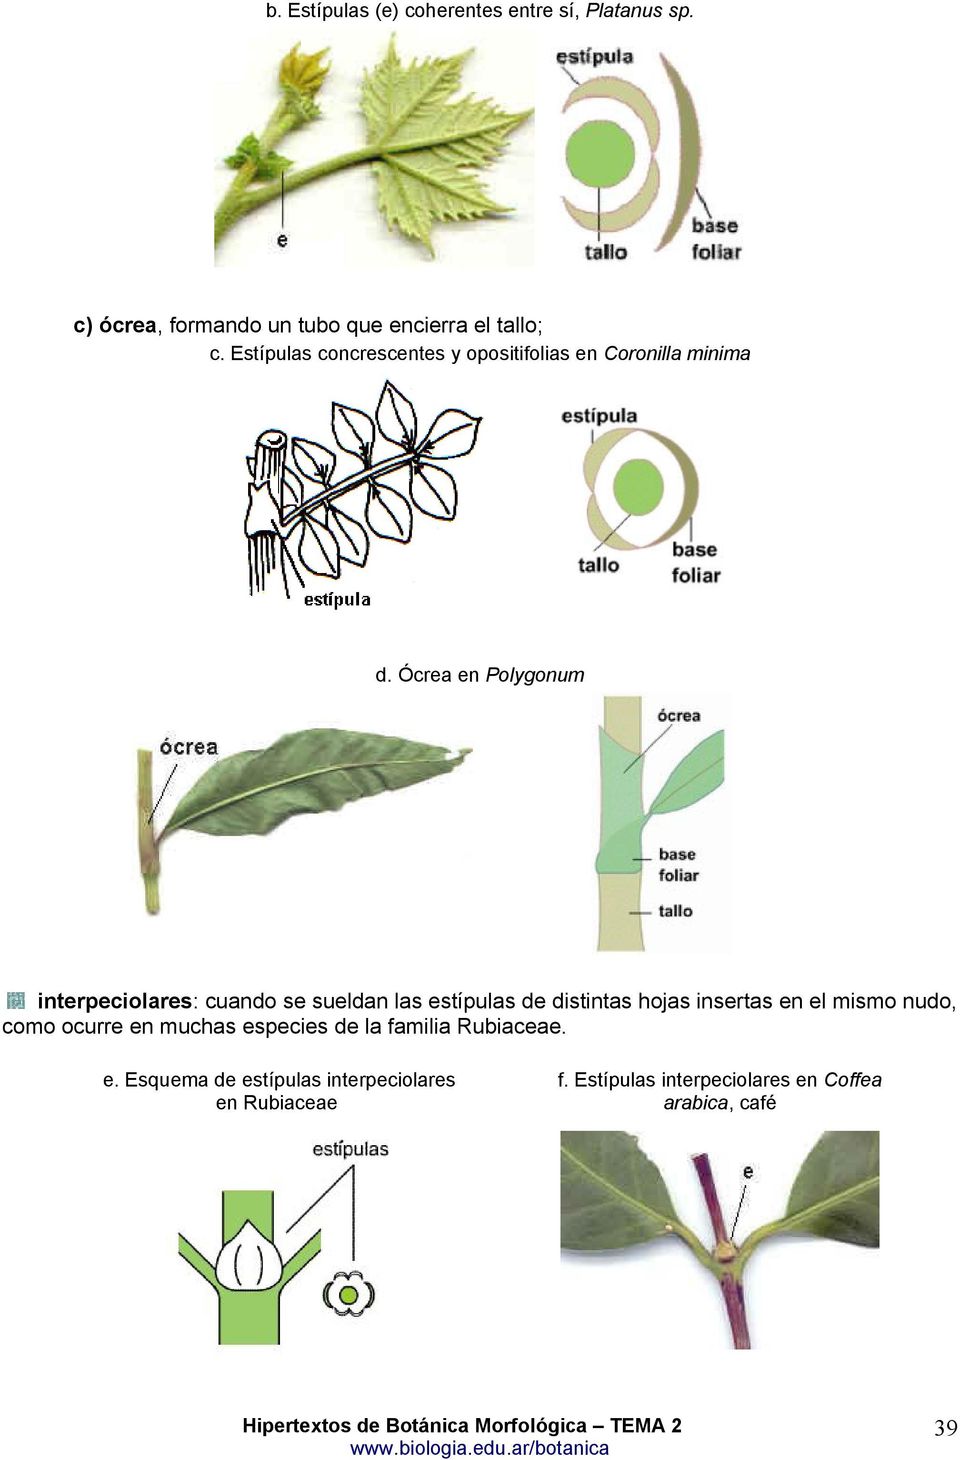 Ócrea en Polygonum interpeciolares: cuando se sueldan las estípulas de distintas hojas insertas en el mismo